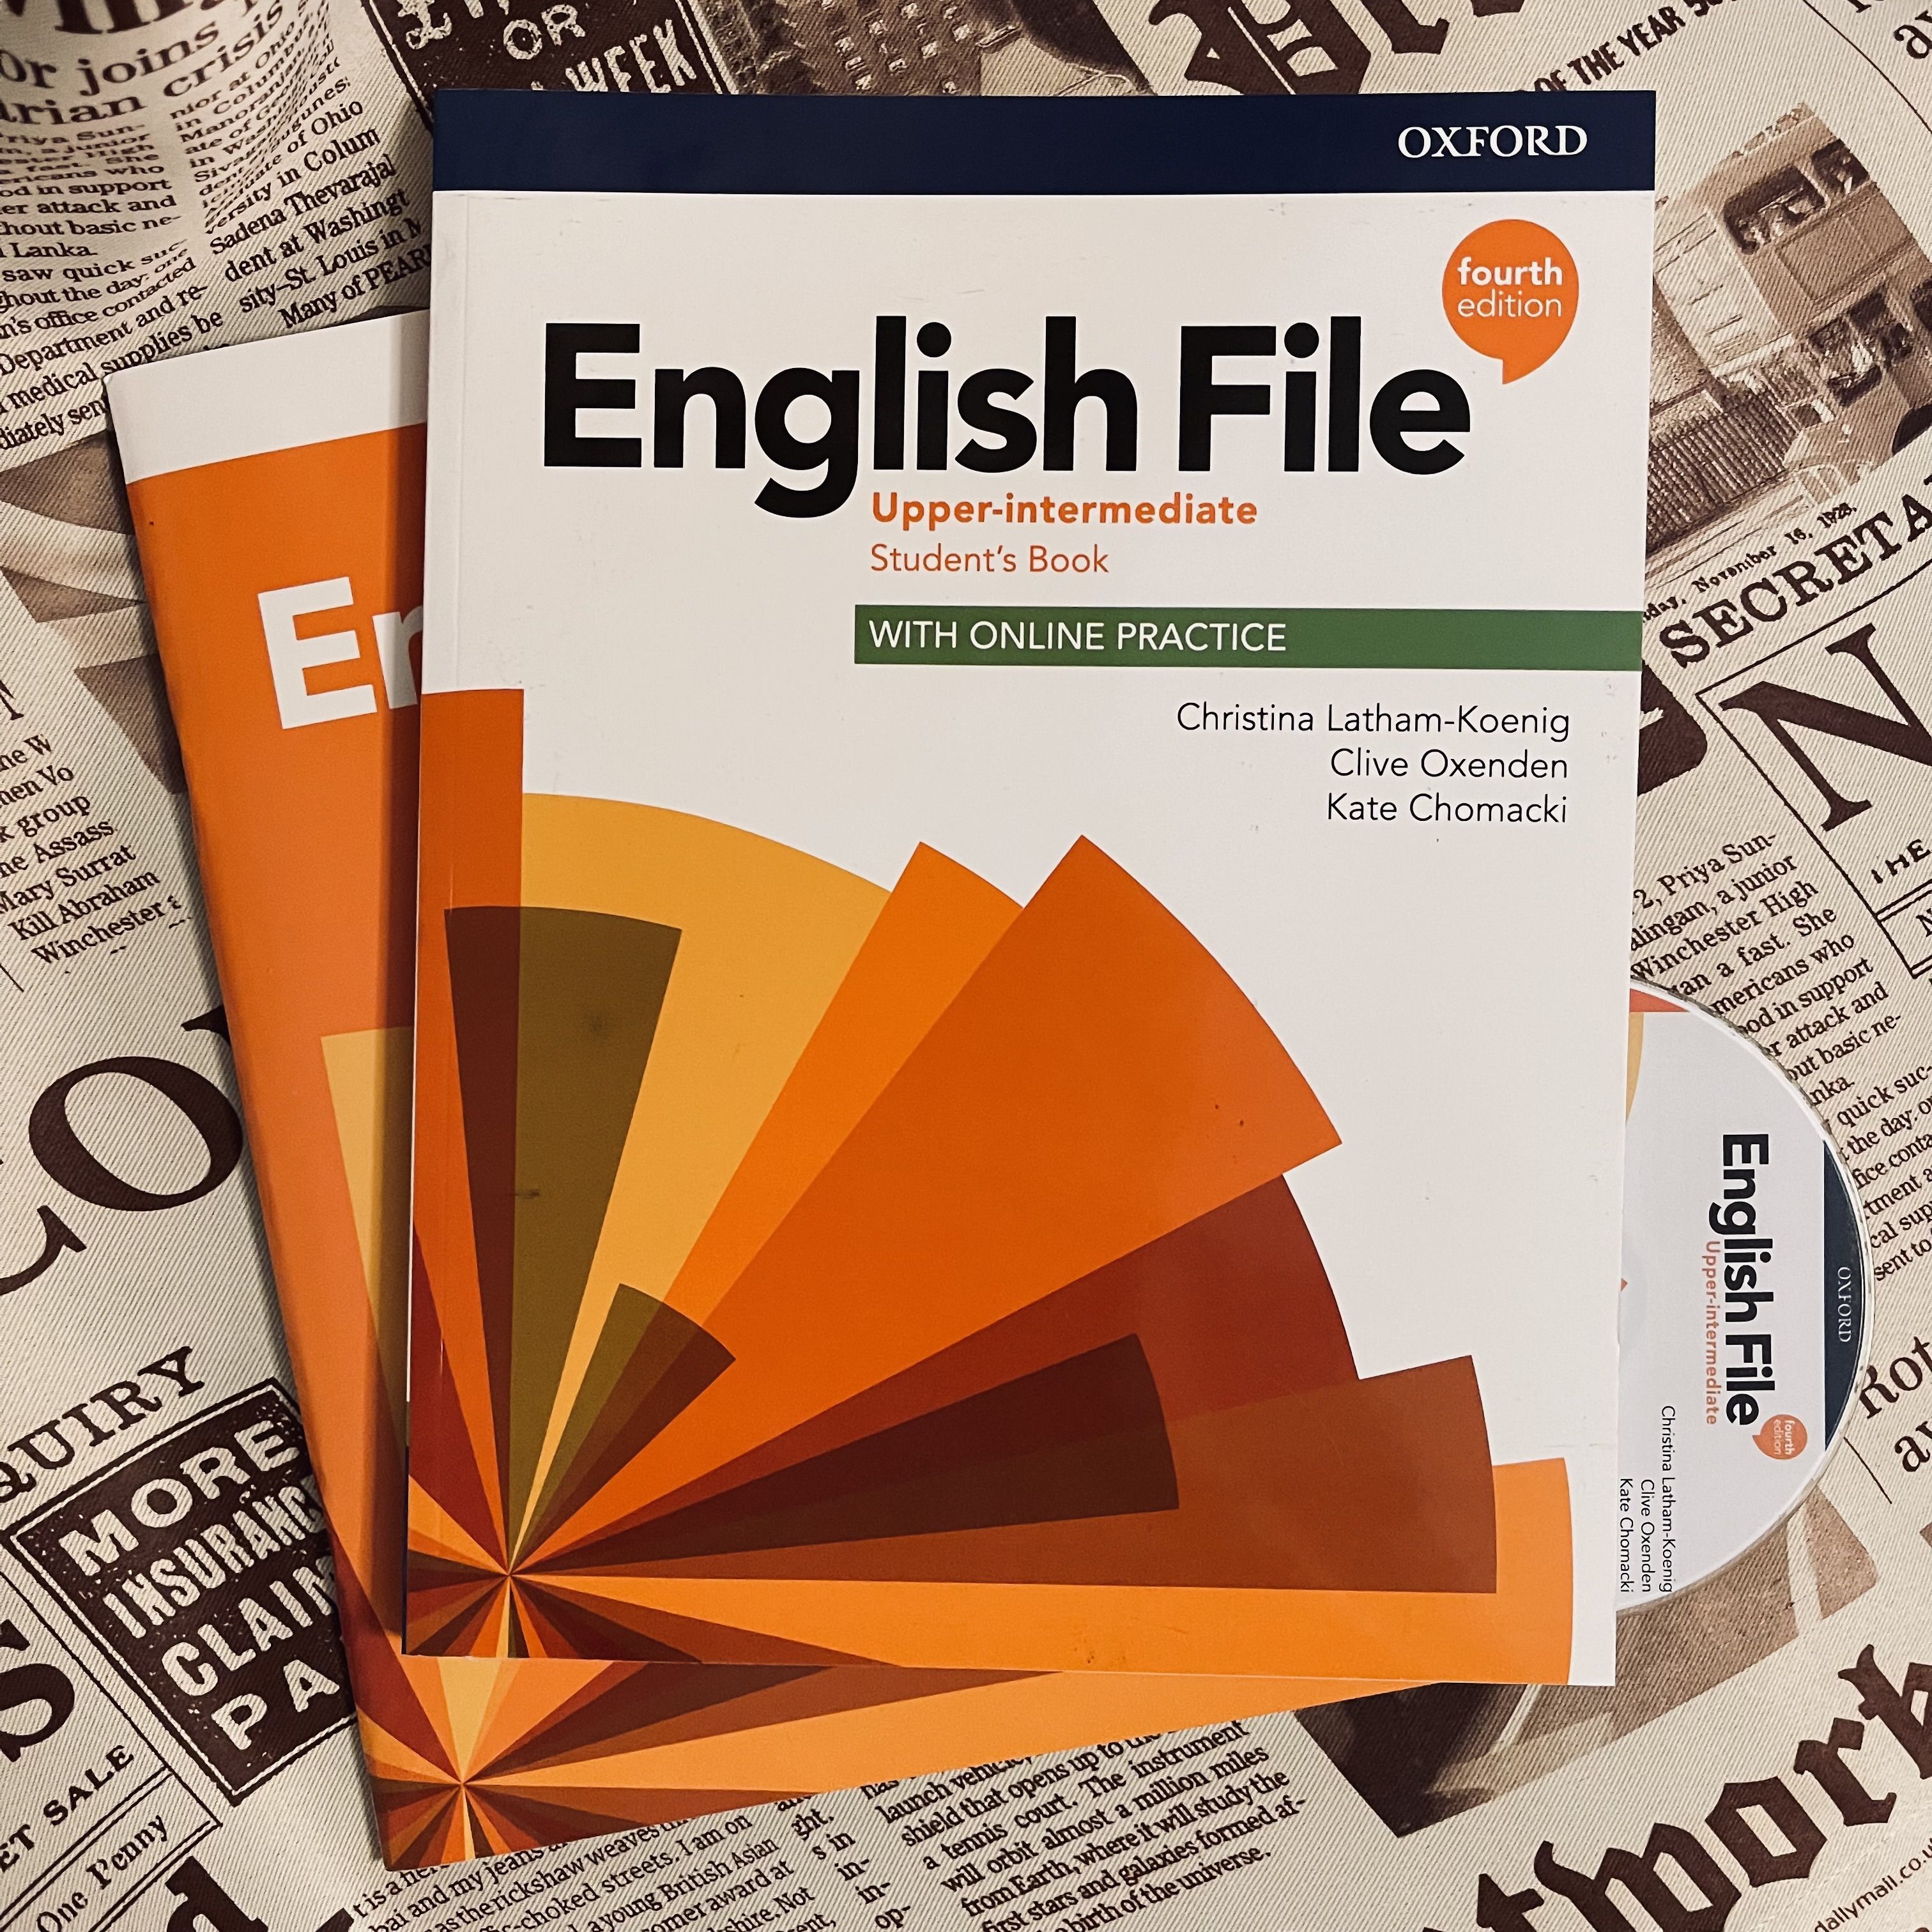 English file Upper Intermediate 4th Edition. English file upper intermediate 4